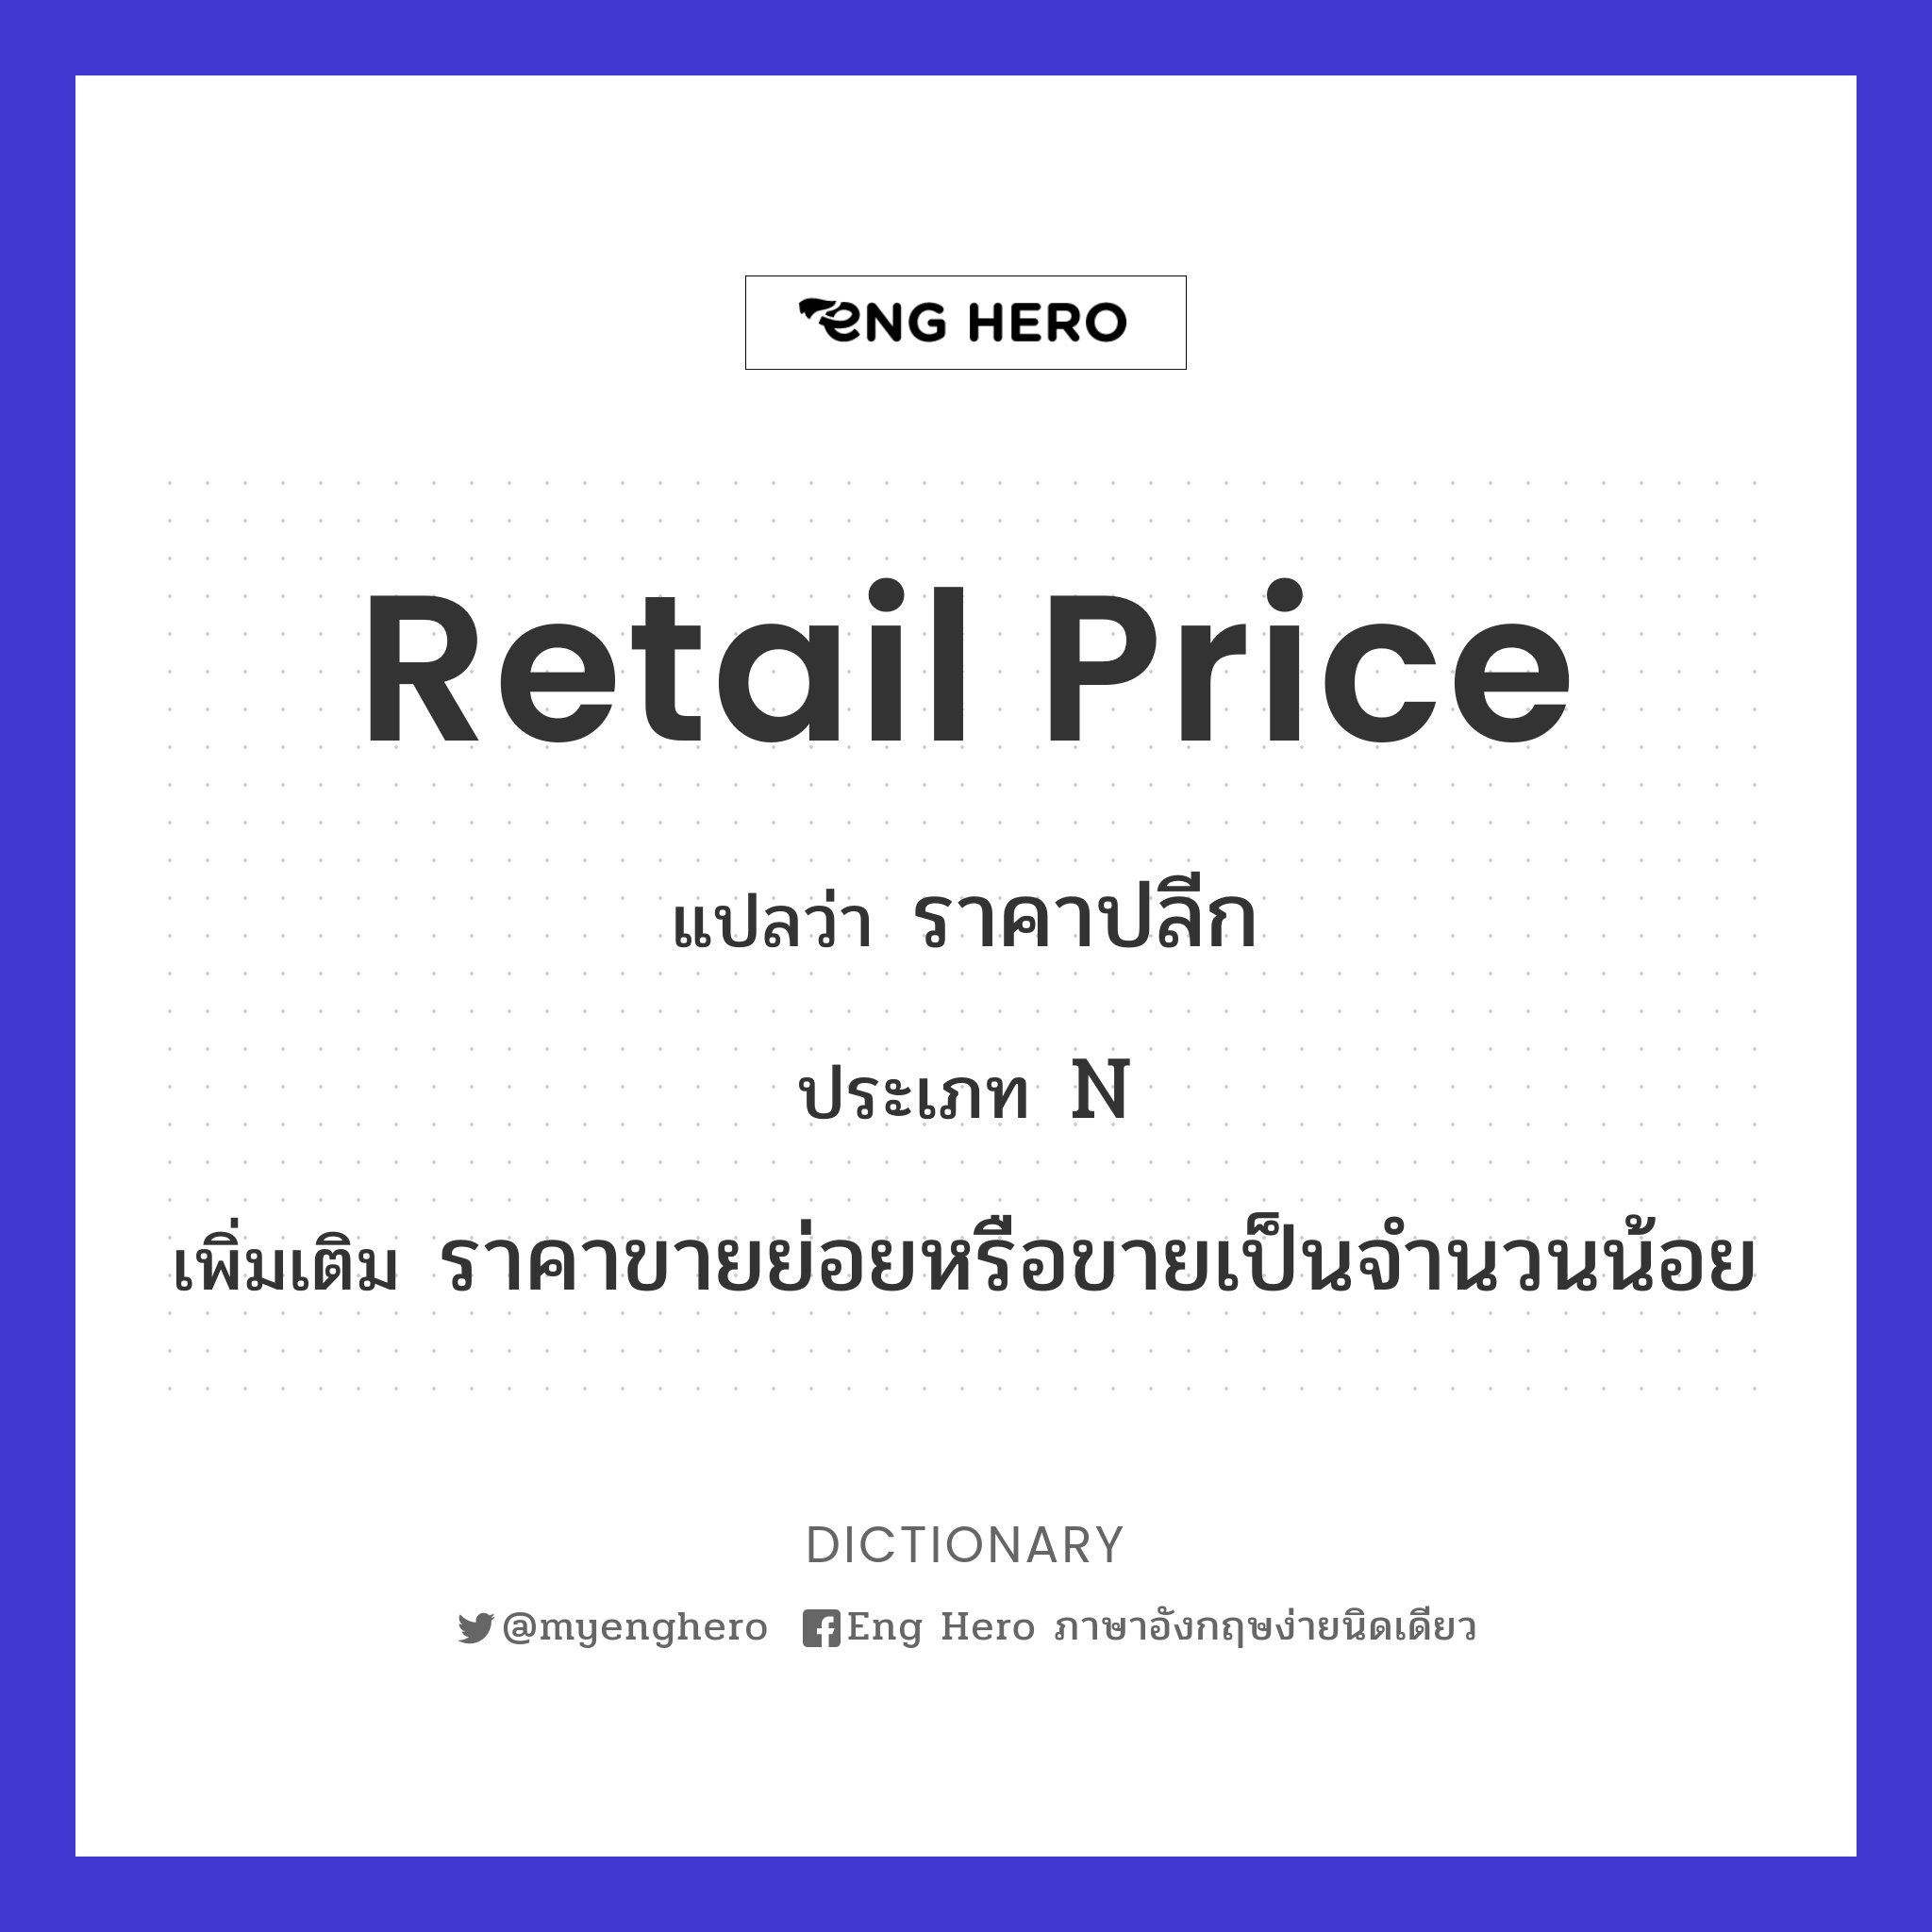 retail price